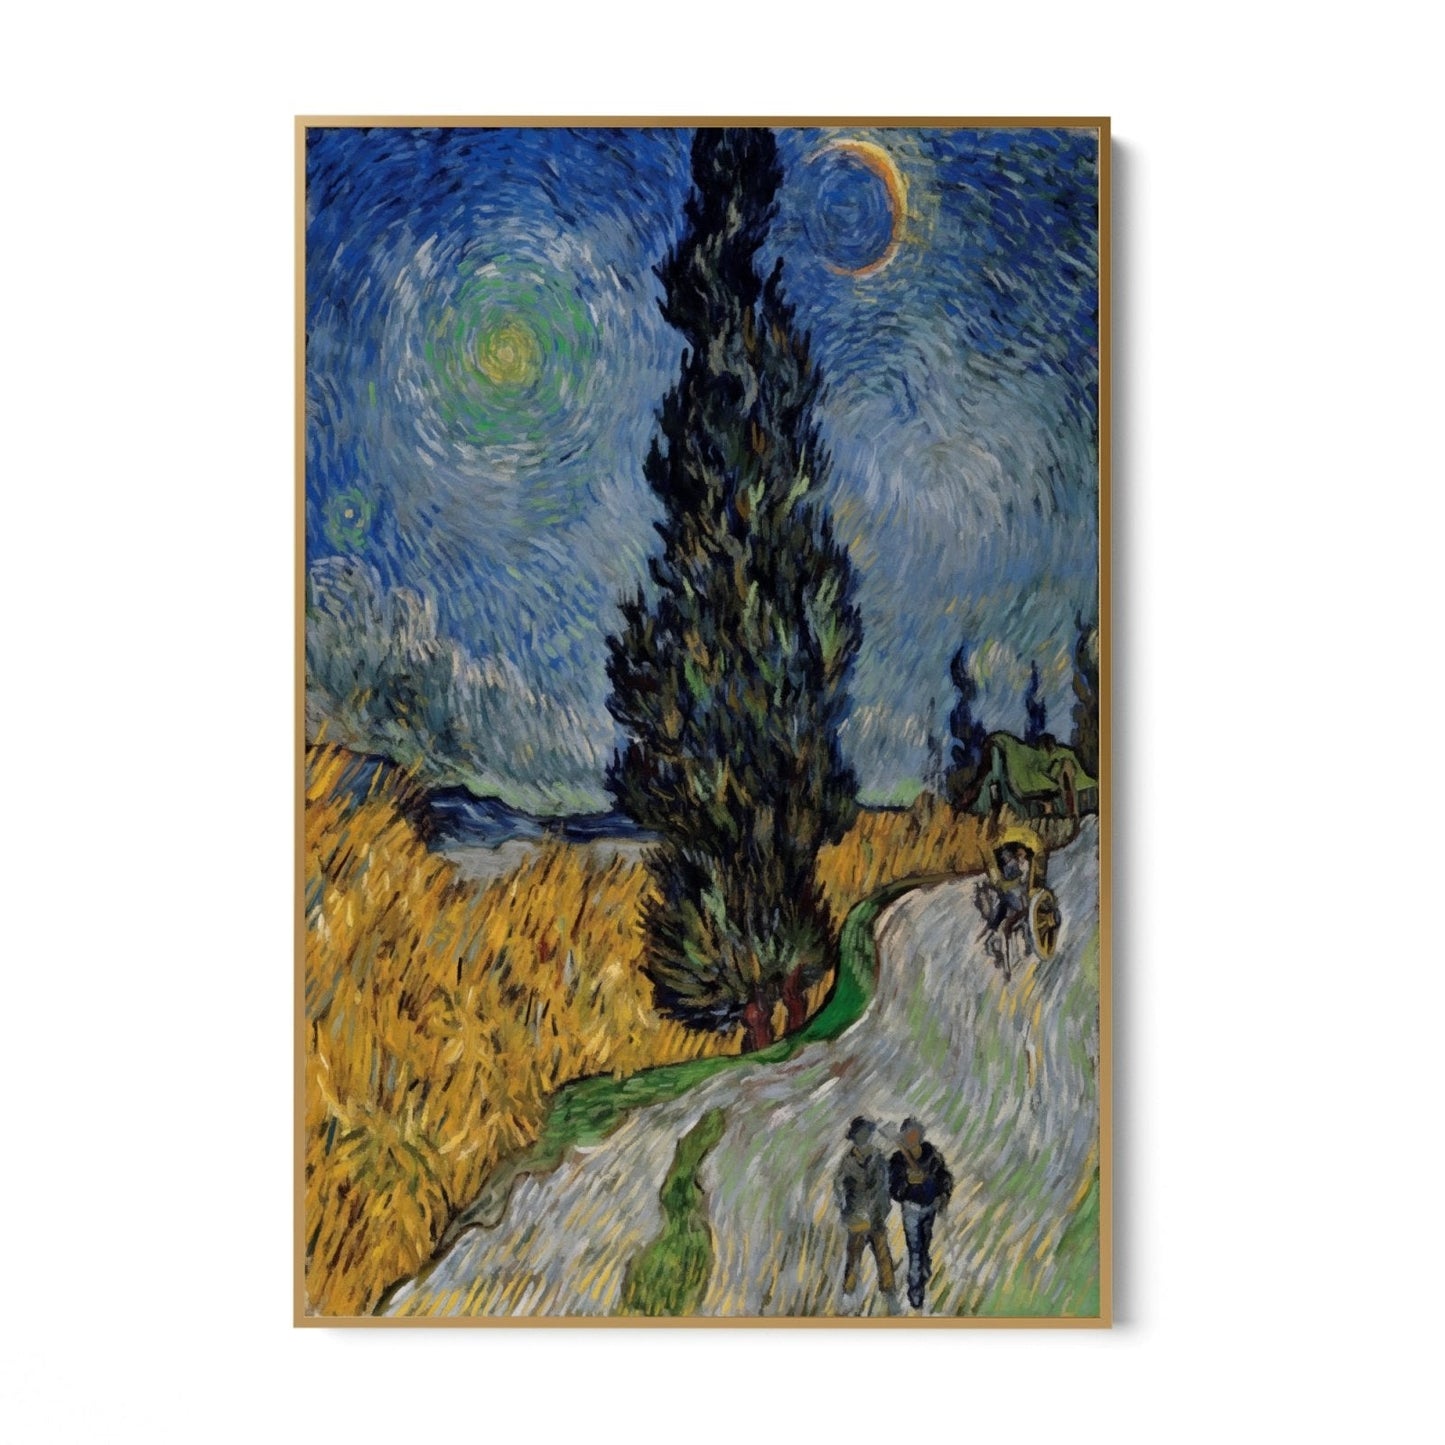 Weg met cipres en ster, Vincent van Gogh